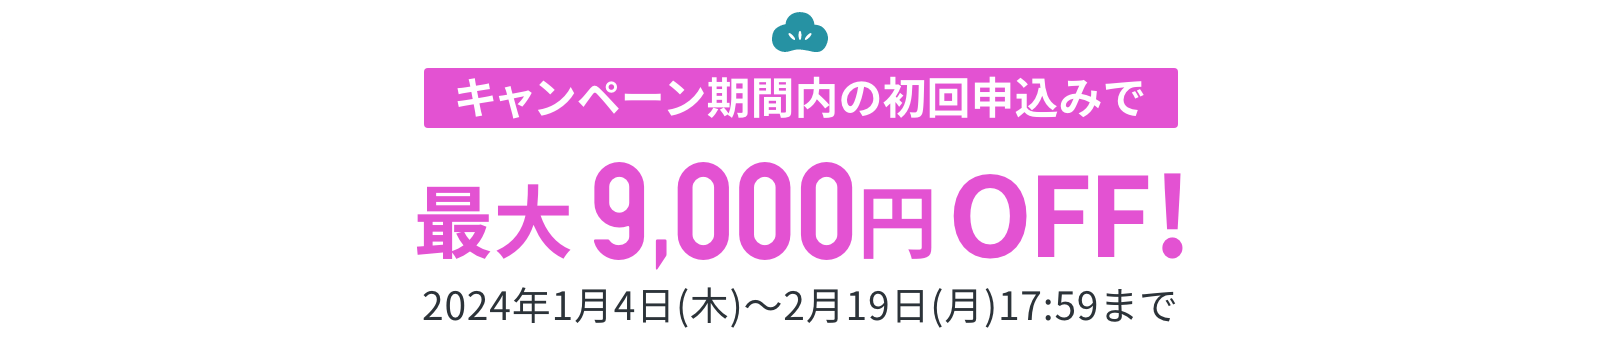 キャンペーン期間内の初回申込みで最大9,000円OFF!!